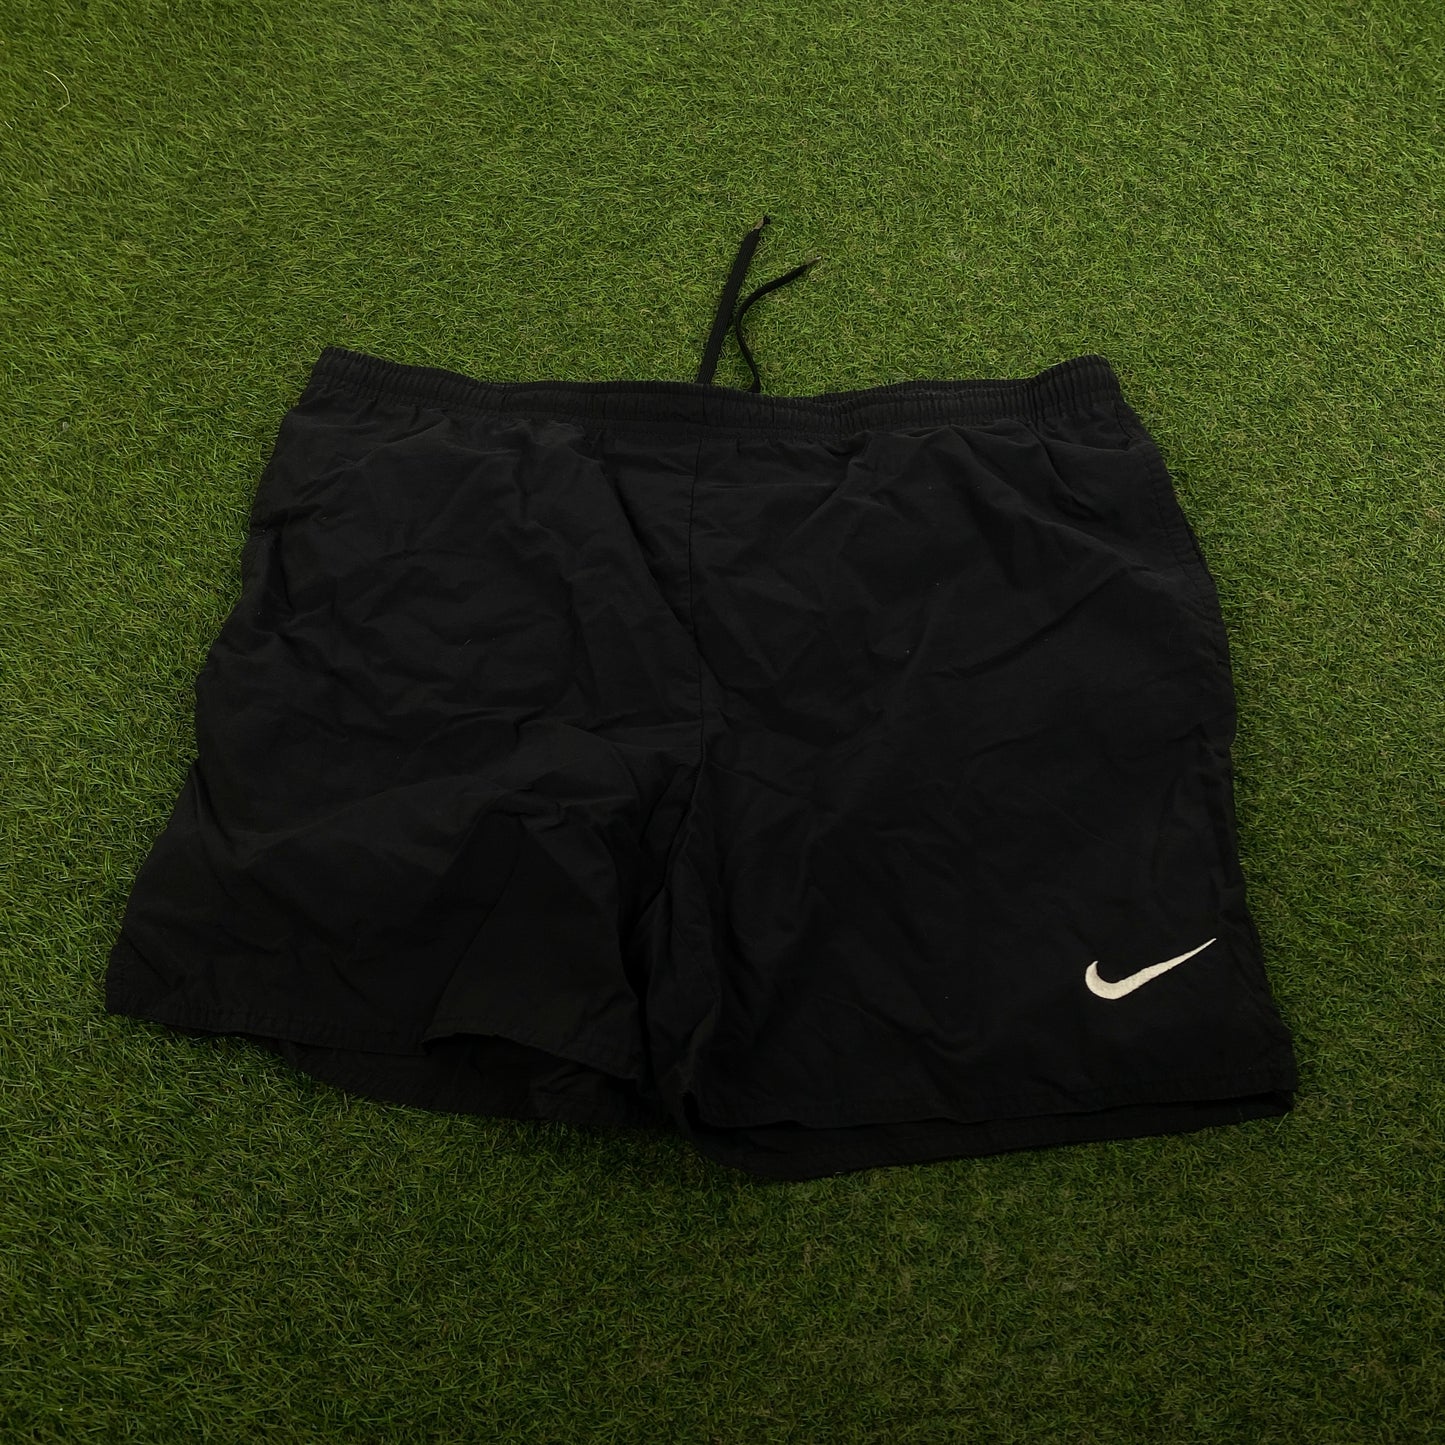 90s Nike Shorts Black Medium